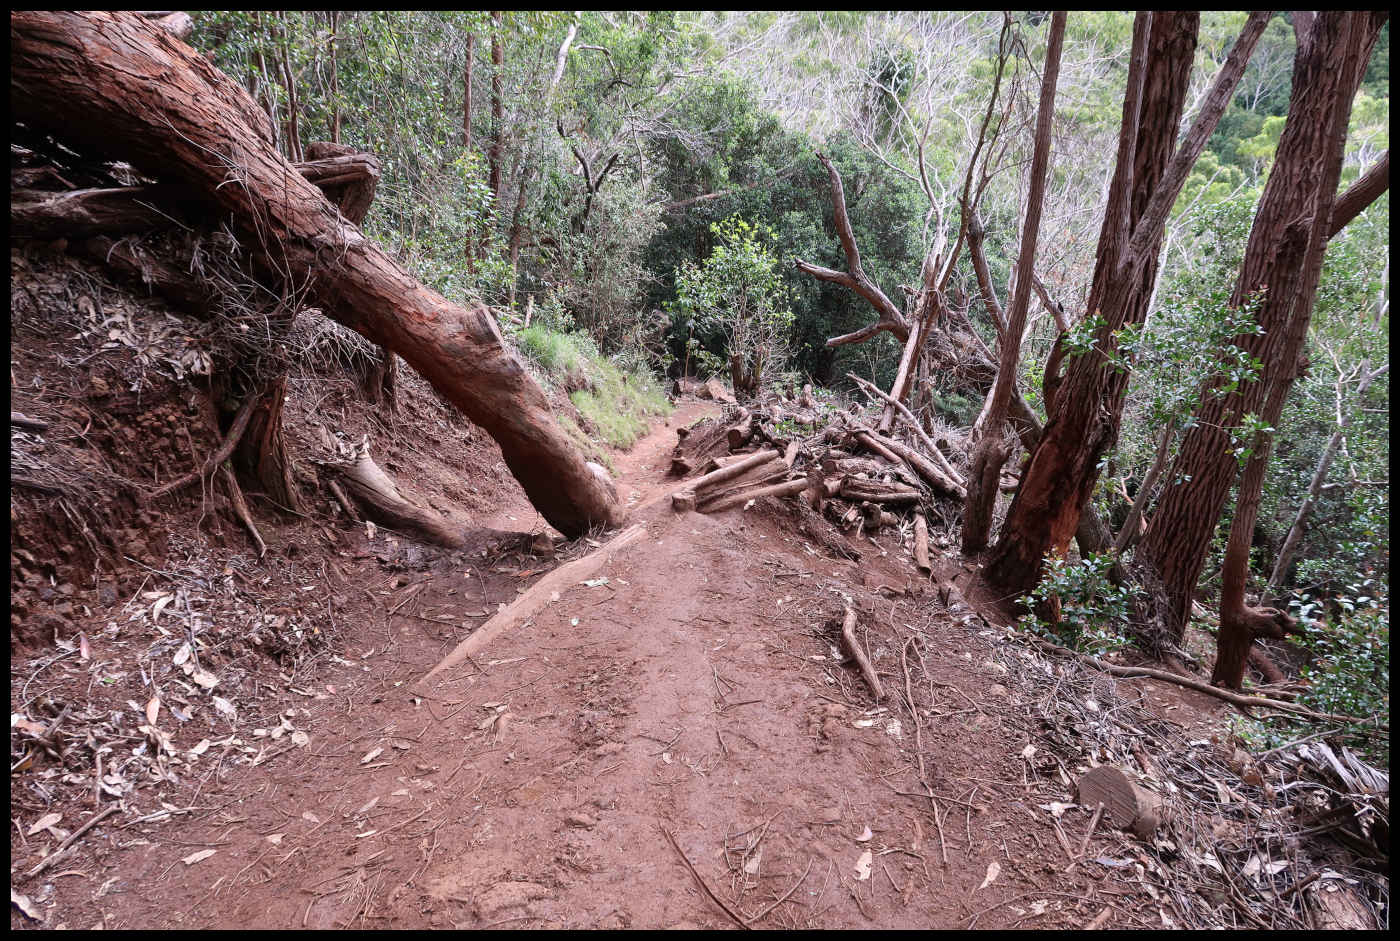 Waimea Canyon Trail